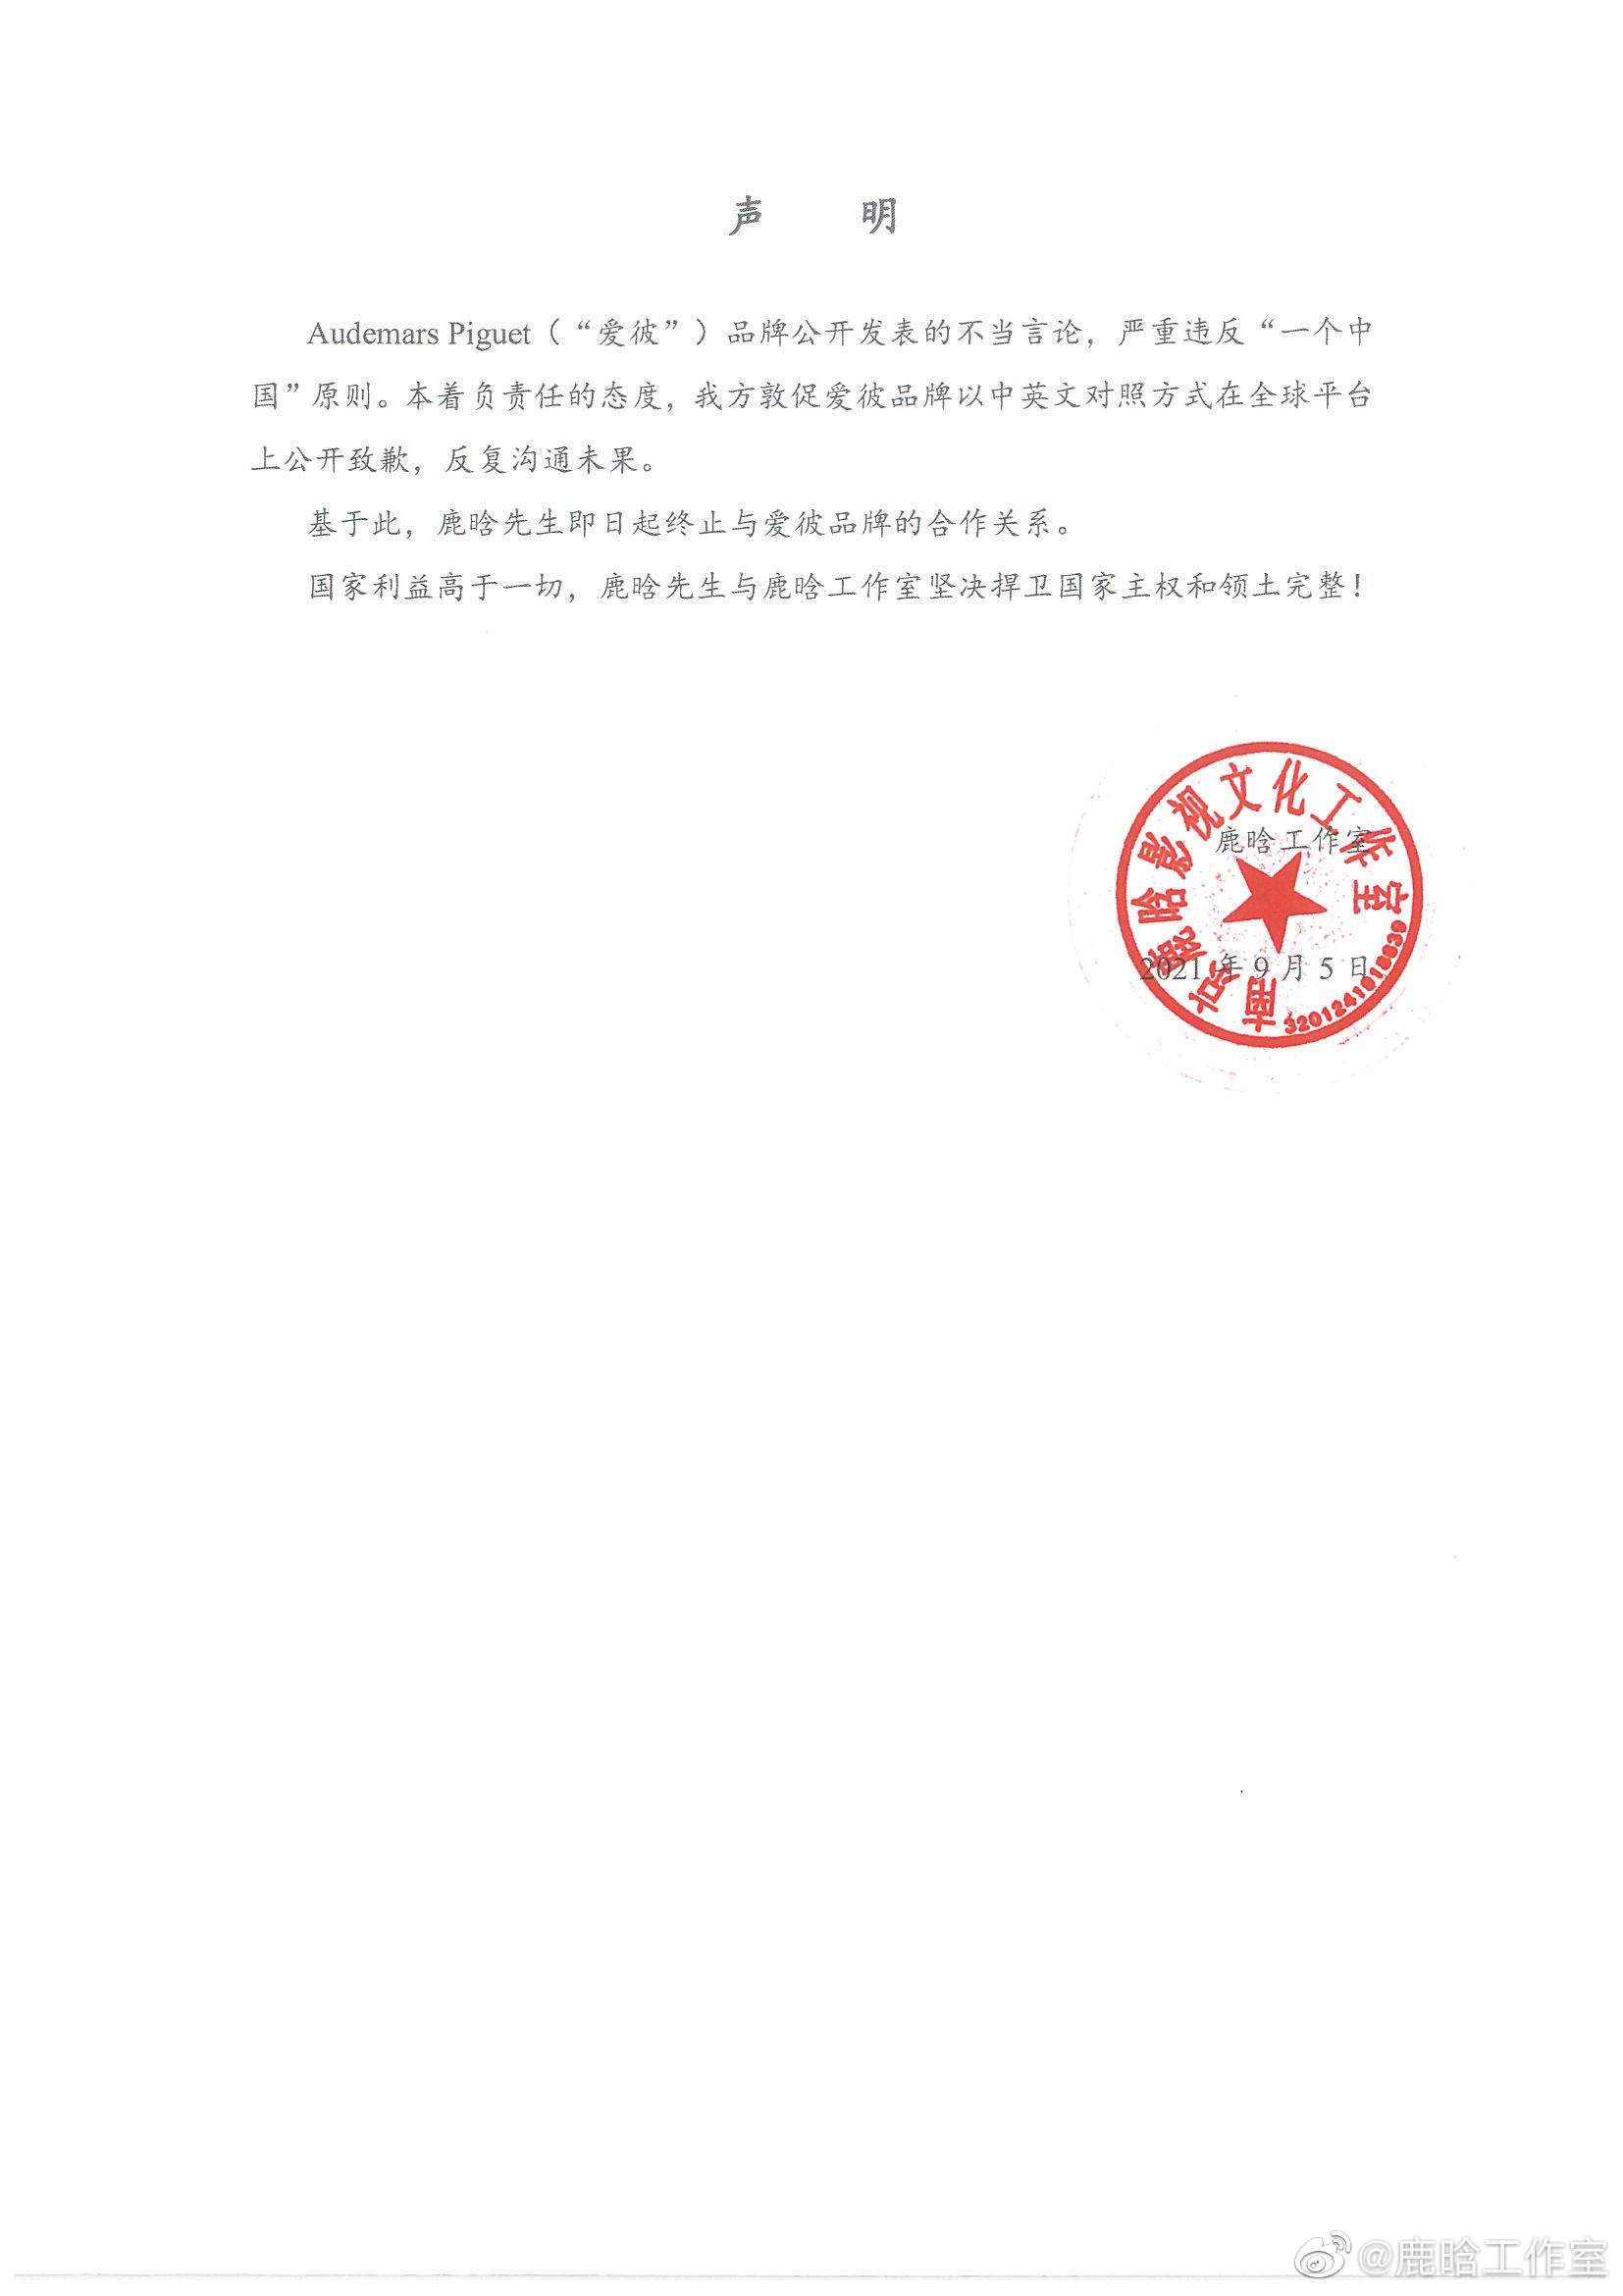 鹿晗終止與瑞士腕表品牌愛彼合作關系，後者曾公開發表違反“一個中國”原則言論-圖2